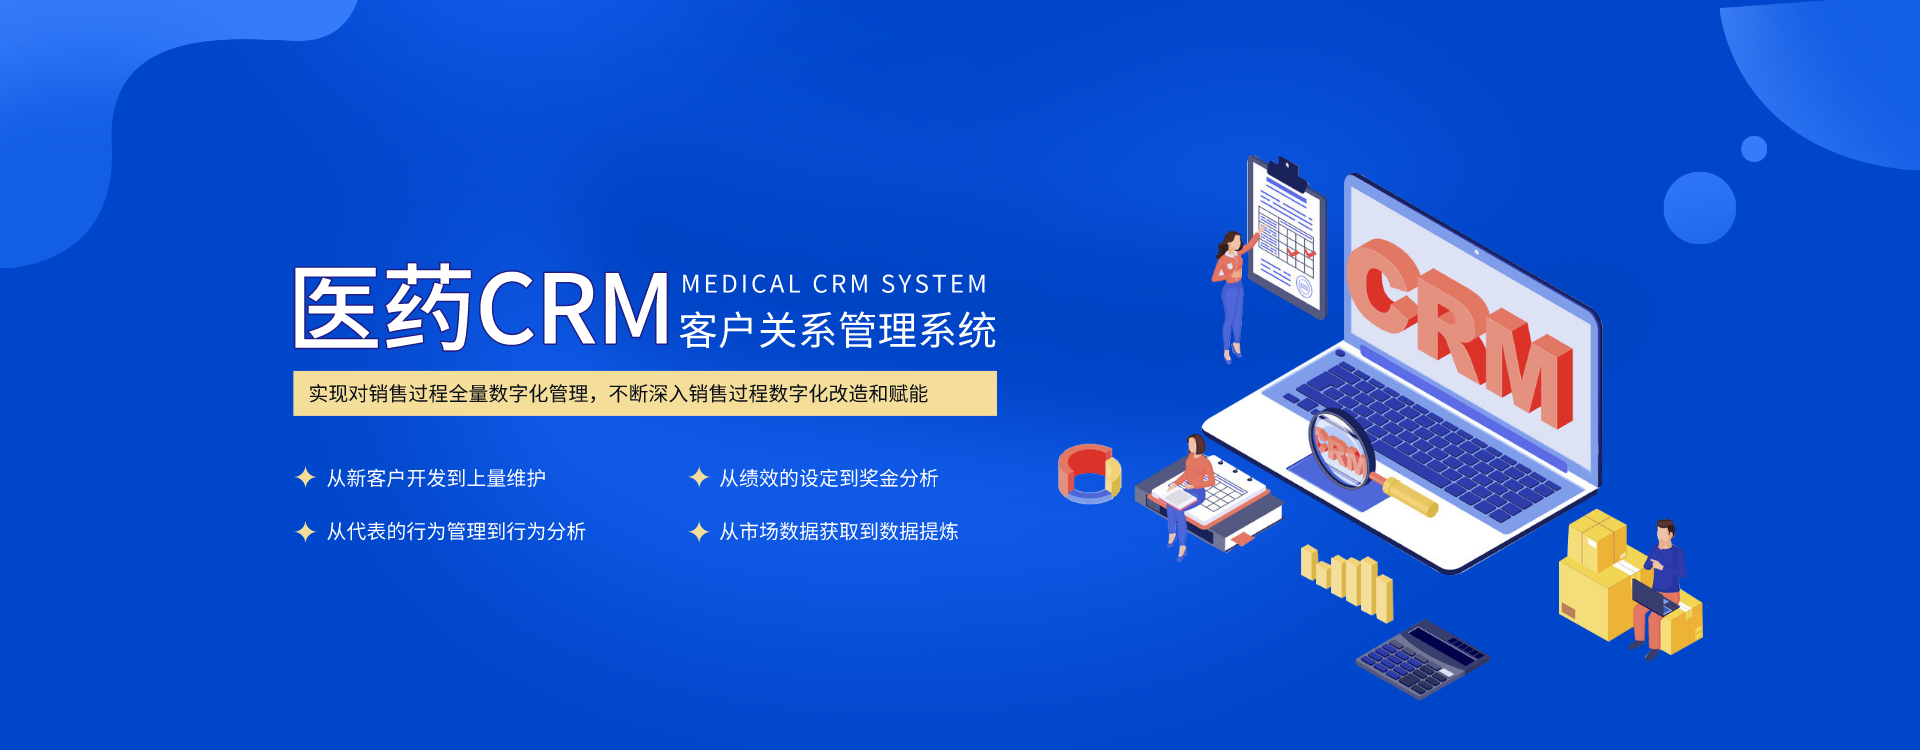 医药crm客户关系管理系统